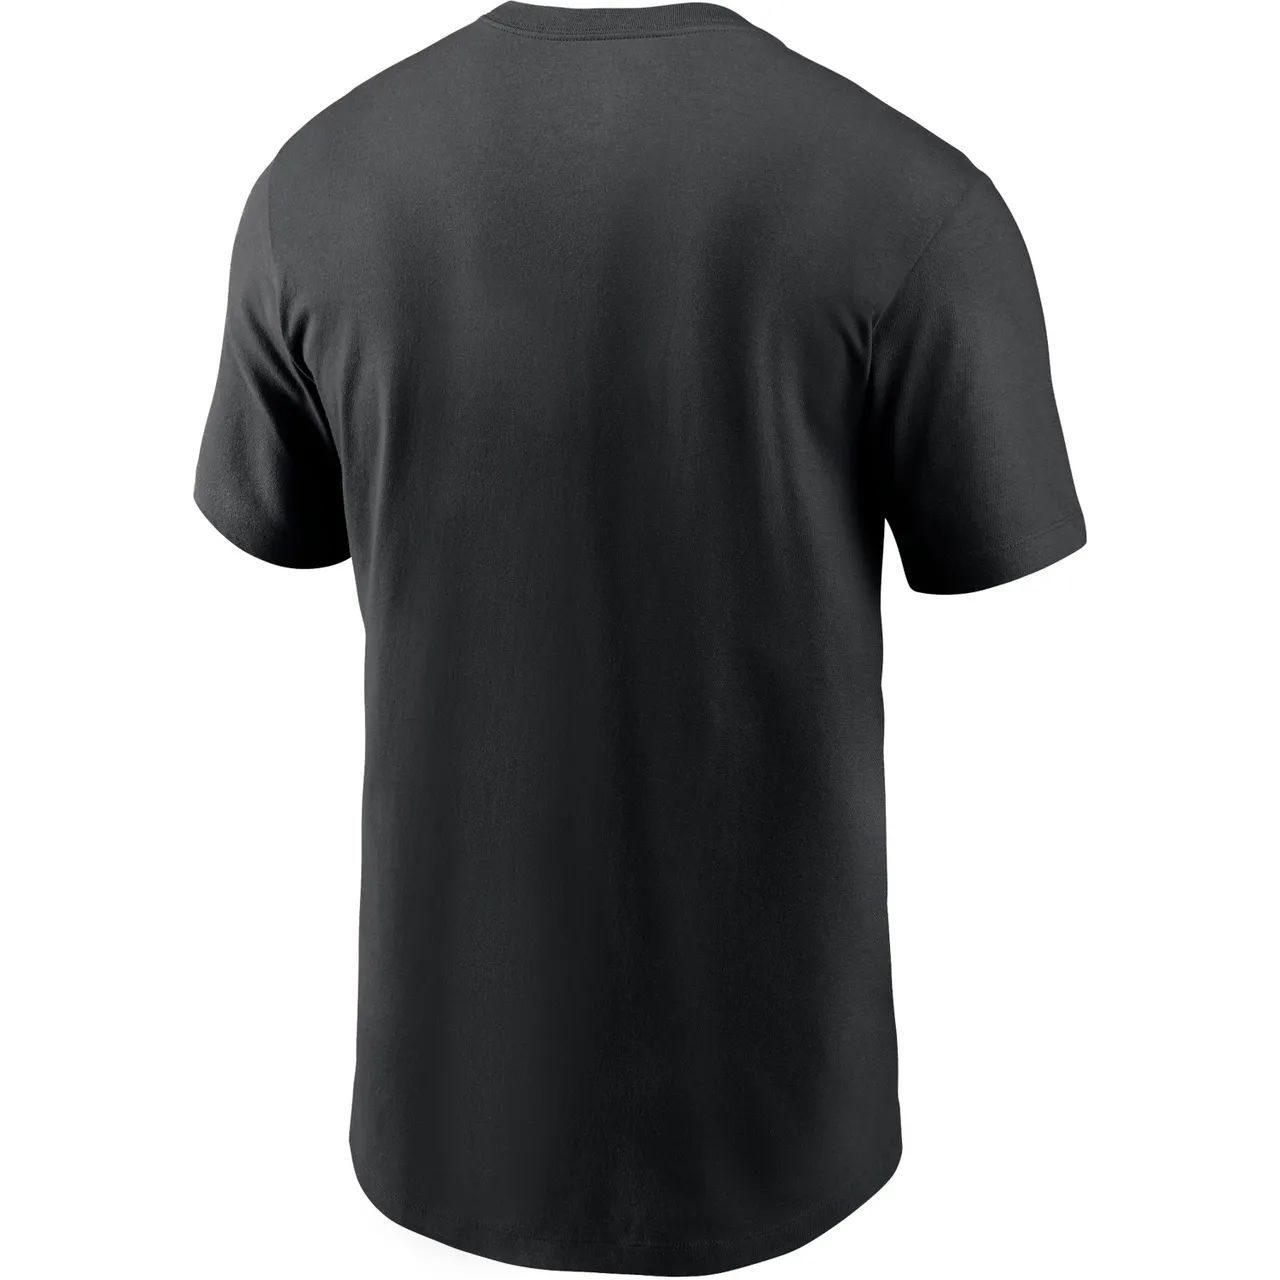 Nike New Orleans Saints T-Shirt Herren